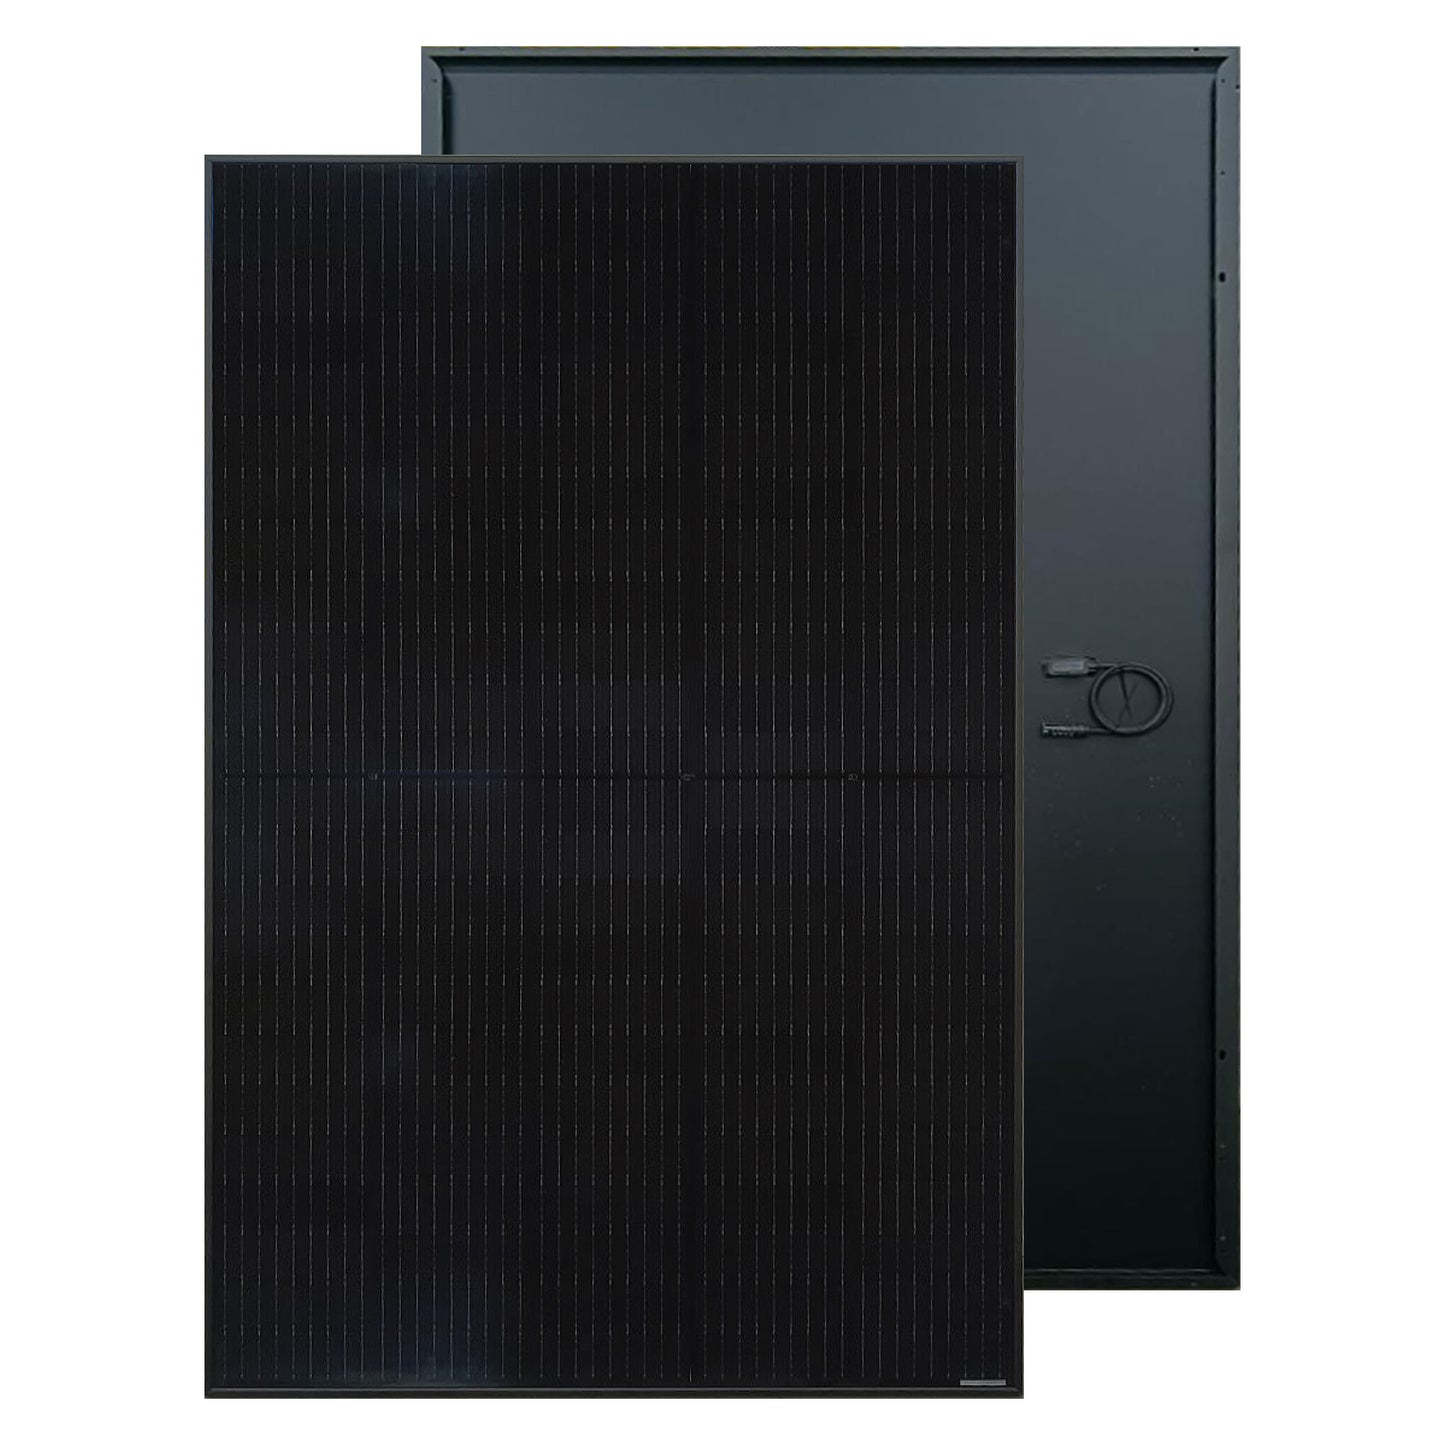 10 kW:n On-grid-aurinkosähköjärjestelmä ONG10. 10,75 MWh/vuosi